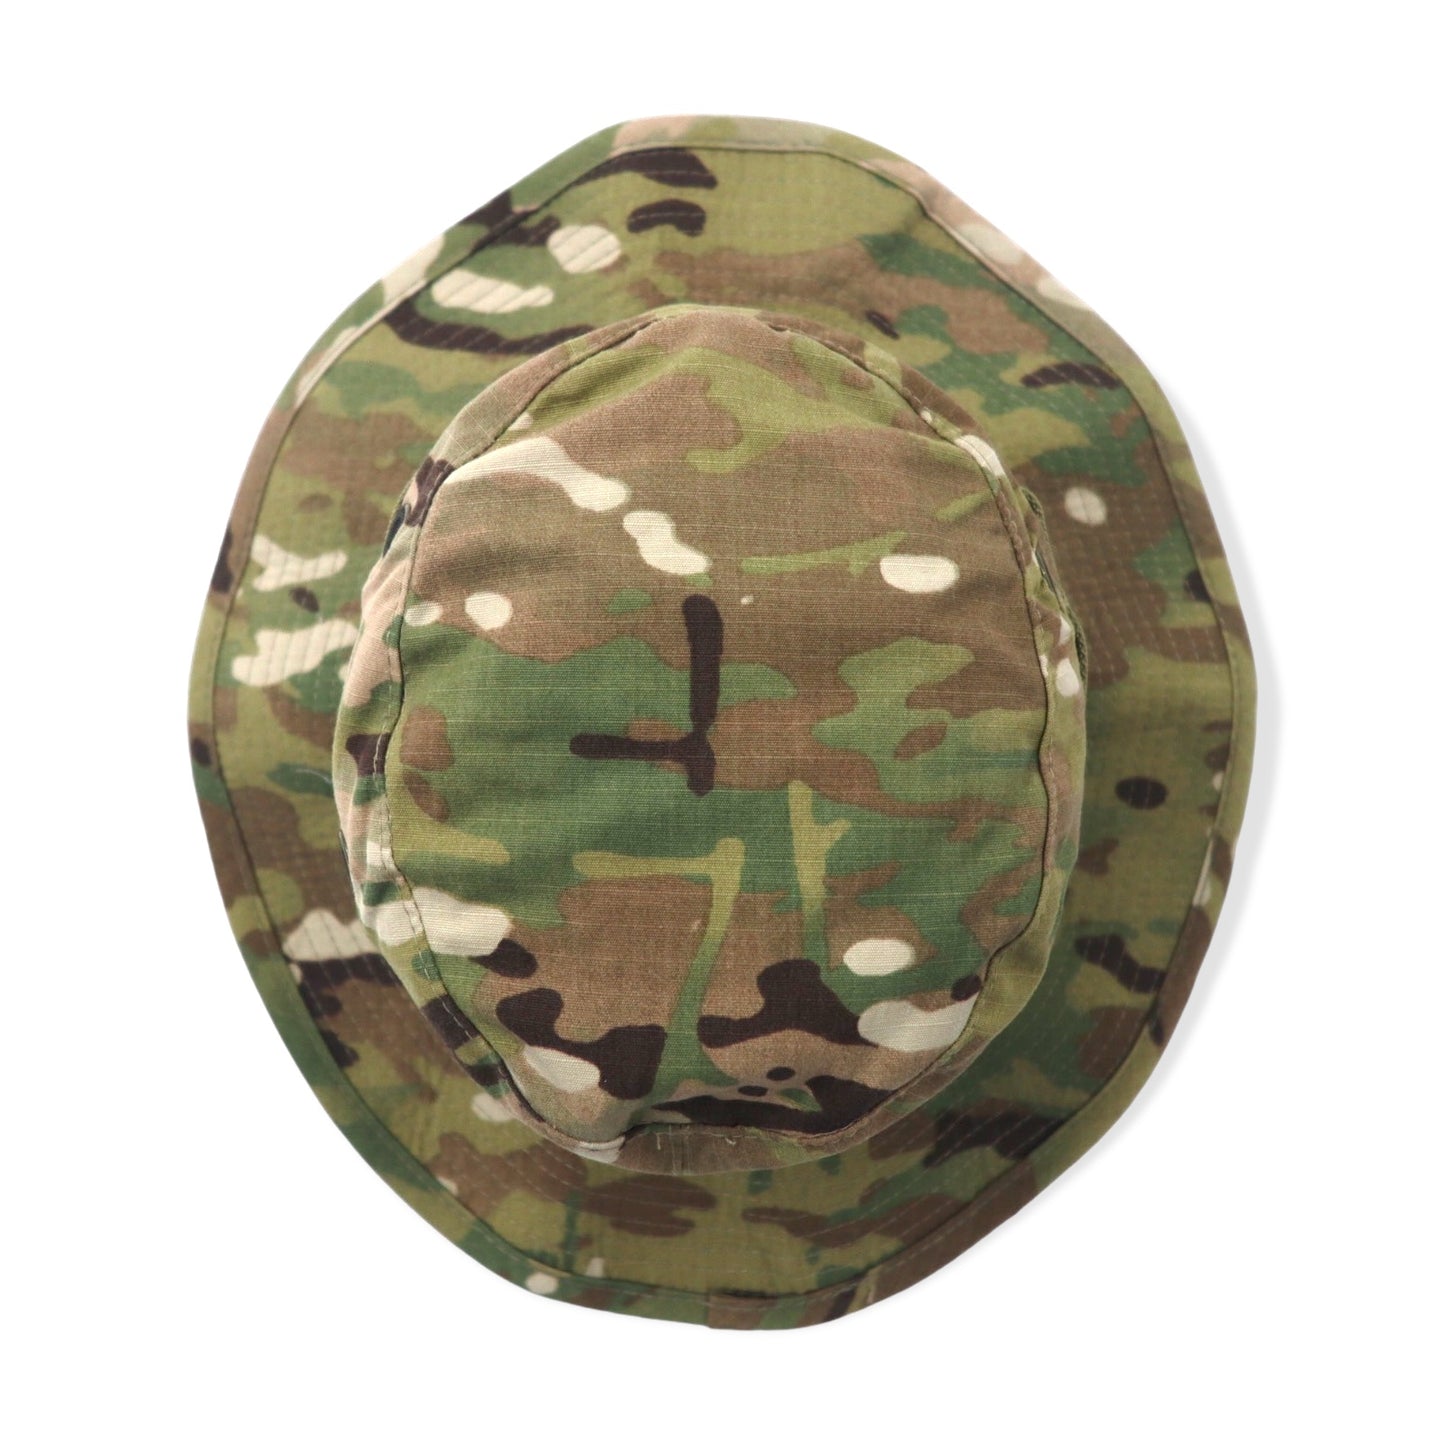 US ARMY サファリハット 58.7cm カーキ カモフラ ミリタリー HAT SUN WEATHER UNIFORM TYPE Ⅵ 8415-01-579-9210 BERNARD CAP Co.